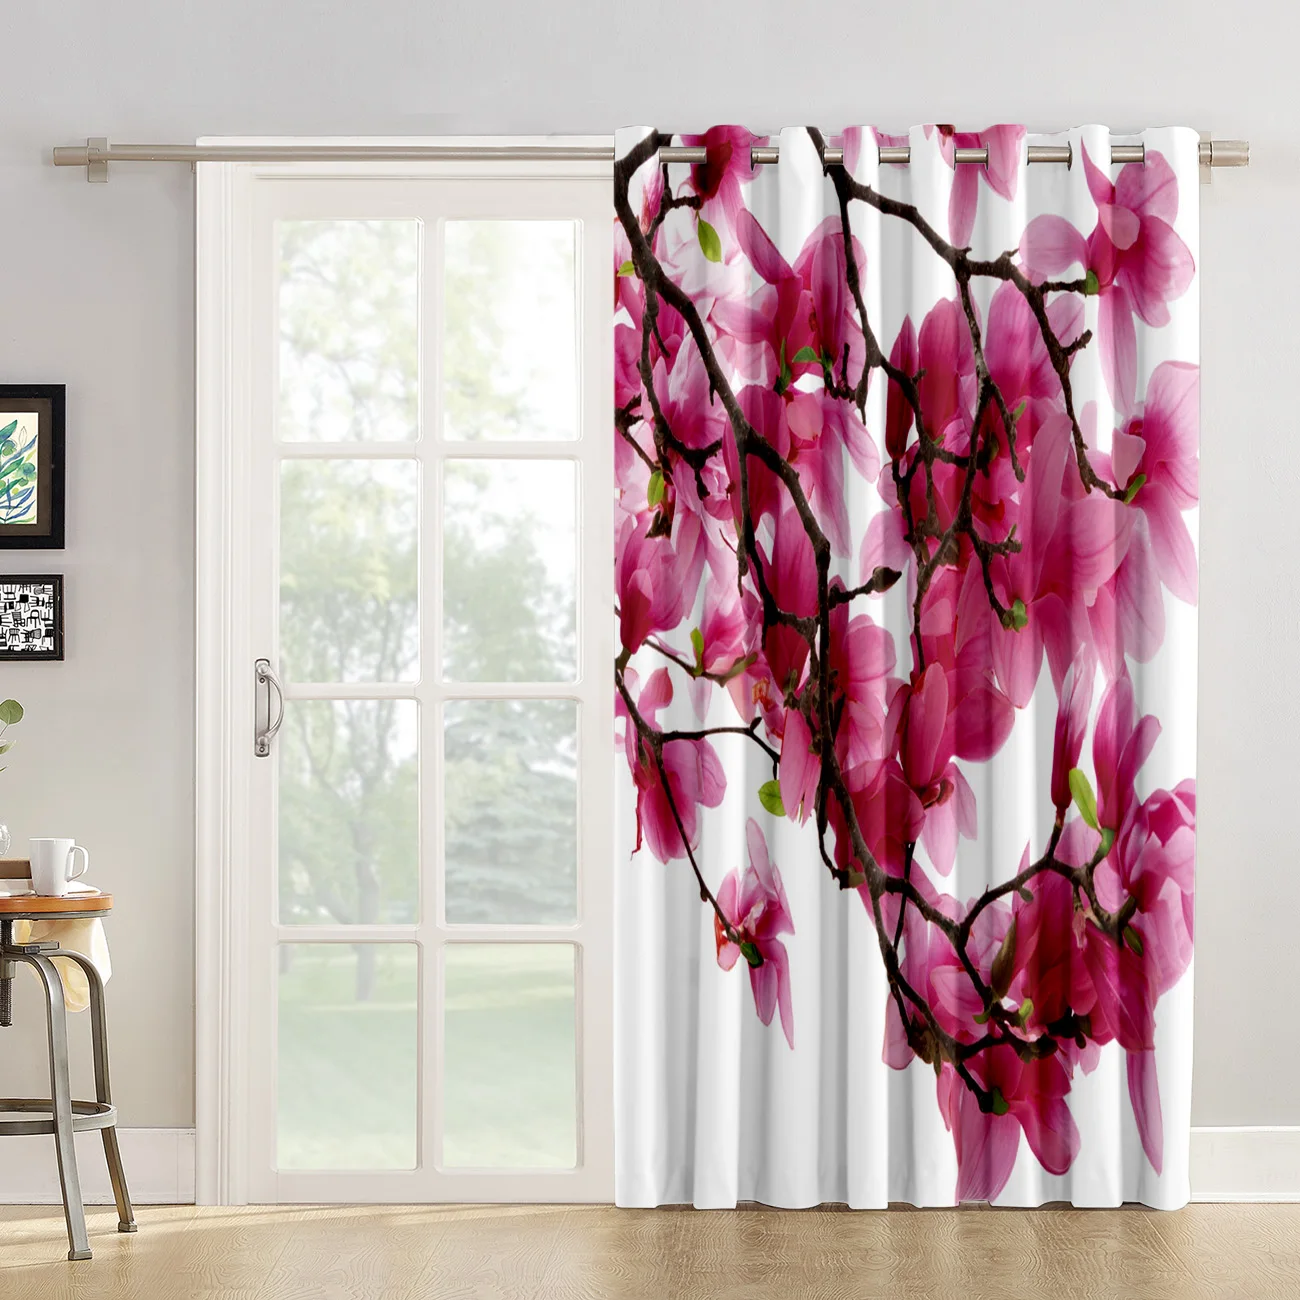 Японские занавески с цветами вишни, большие оконные занавески, темный декор, декор для ванной комнаты, оборудование для обработки окон